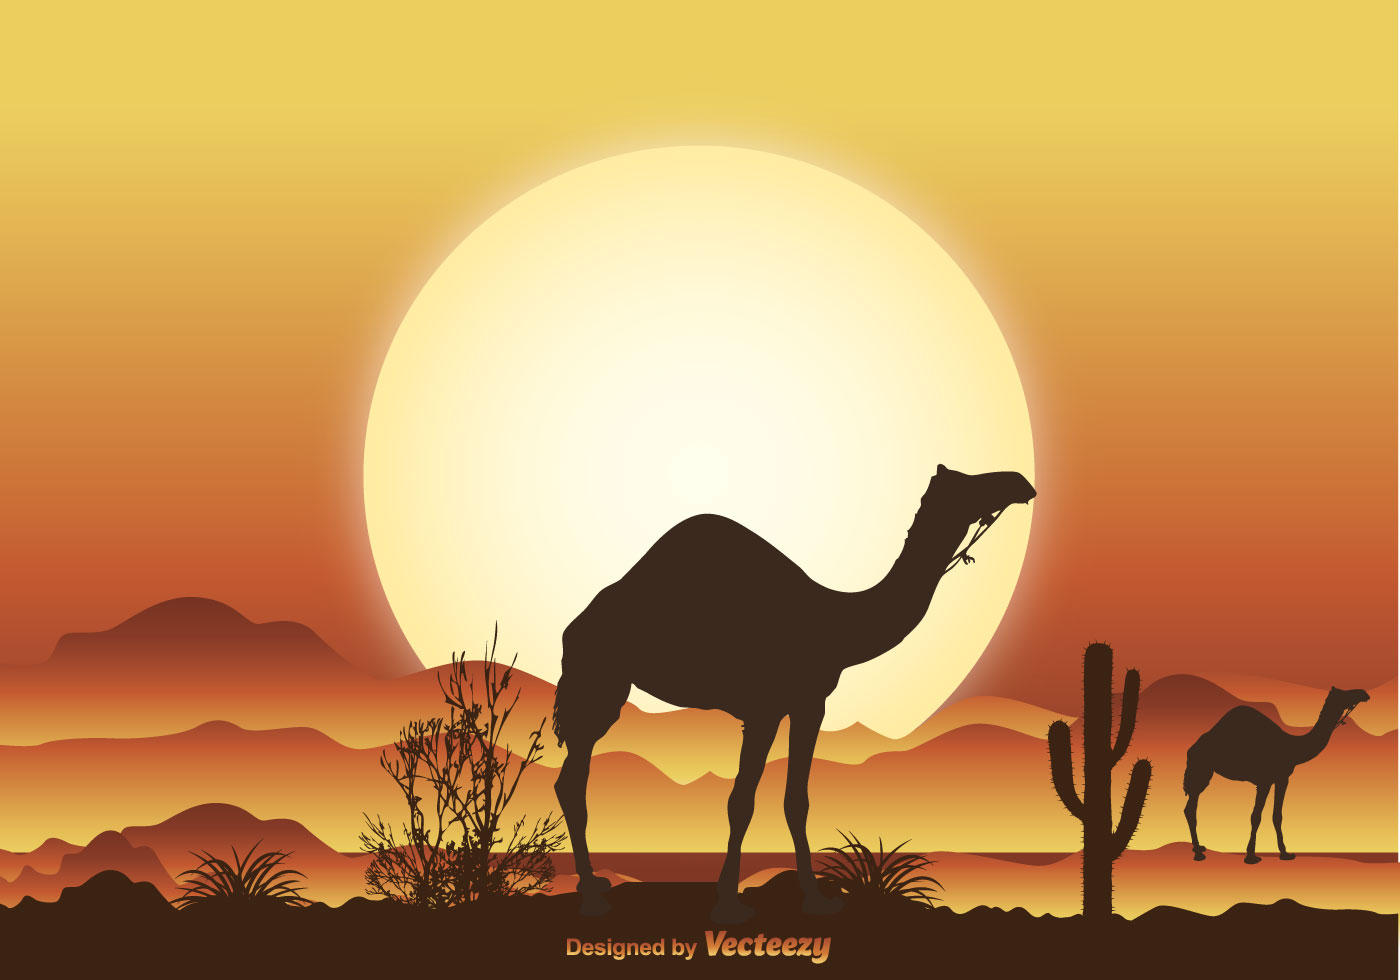 Desert Camel Scene Illustration - Download Free Vector Art ...